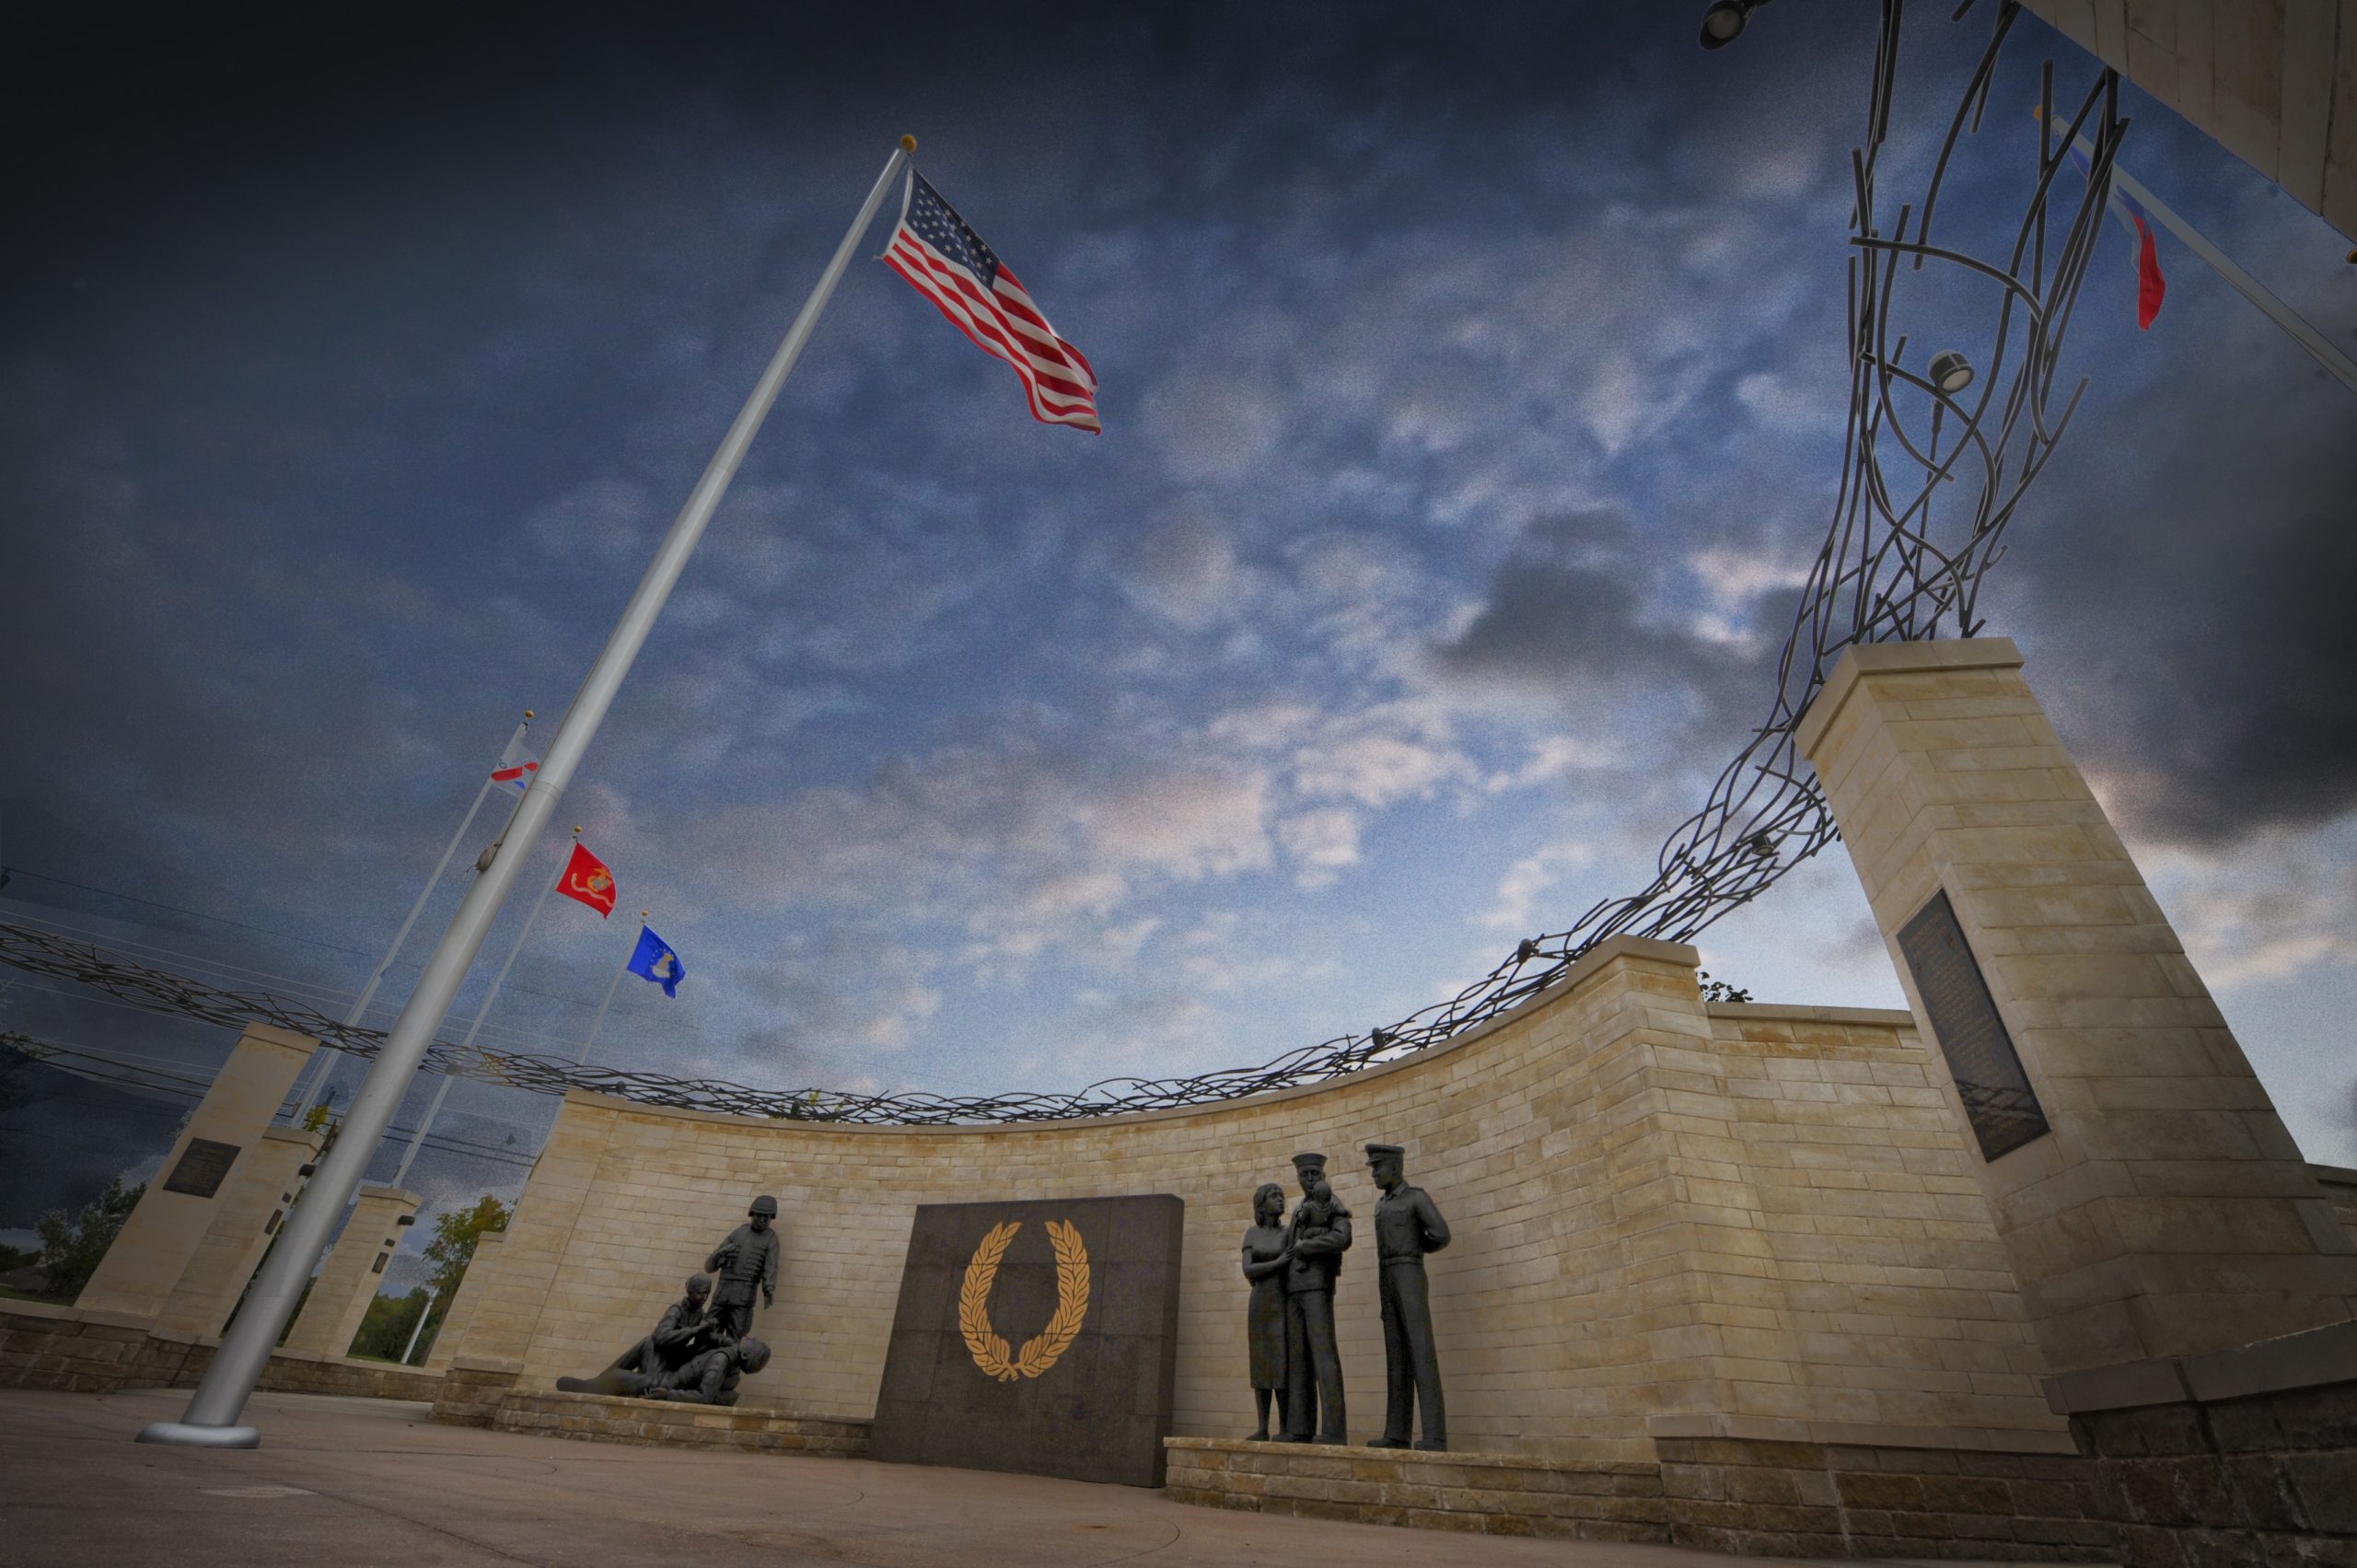 Plano Veterans Memorial Park in honor of military veterans